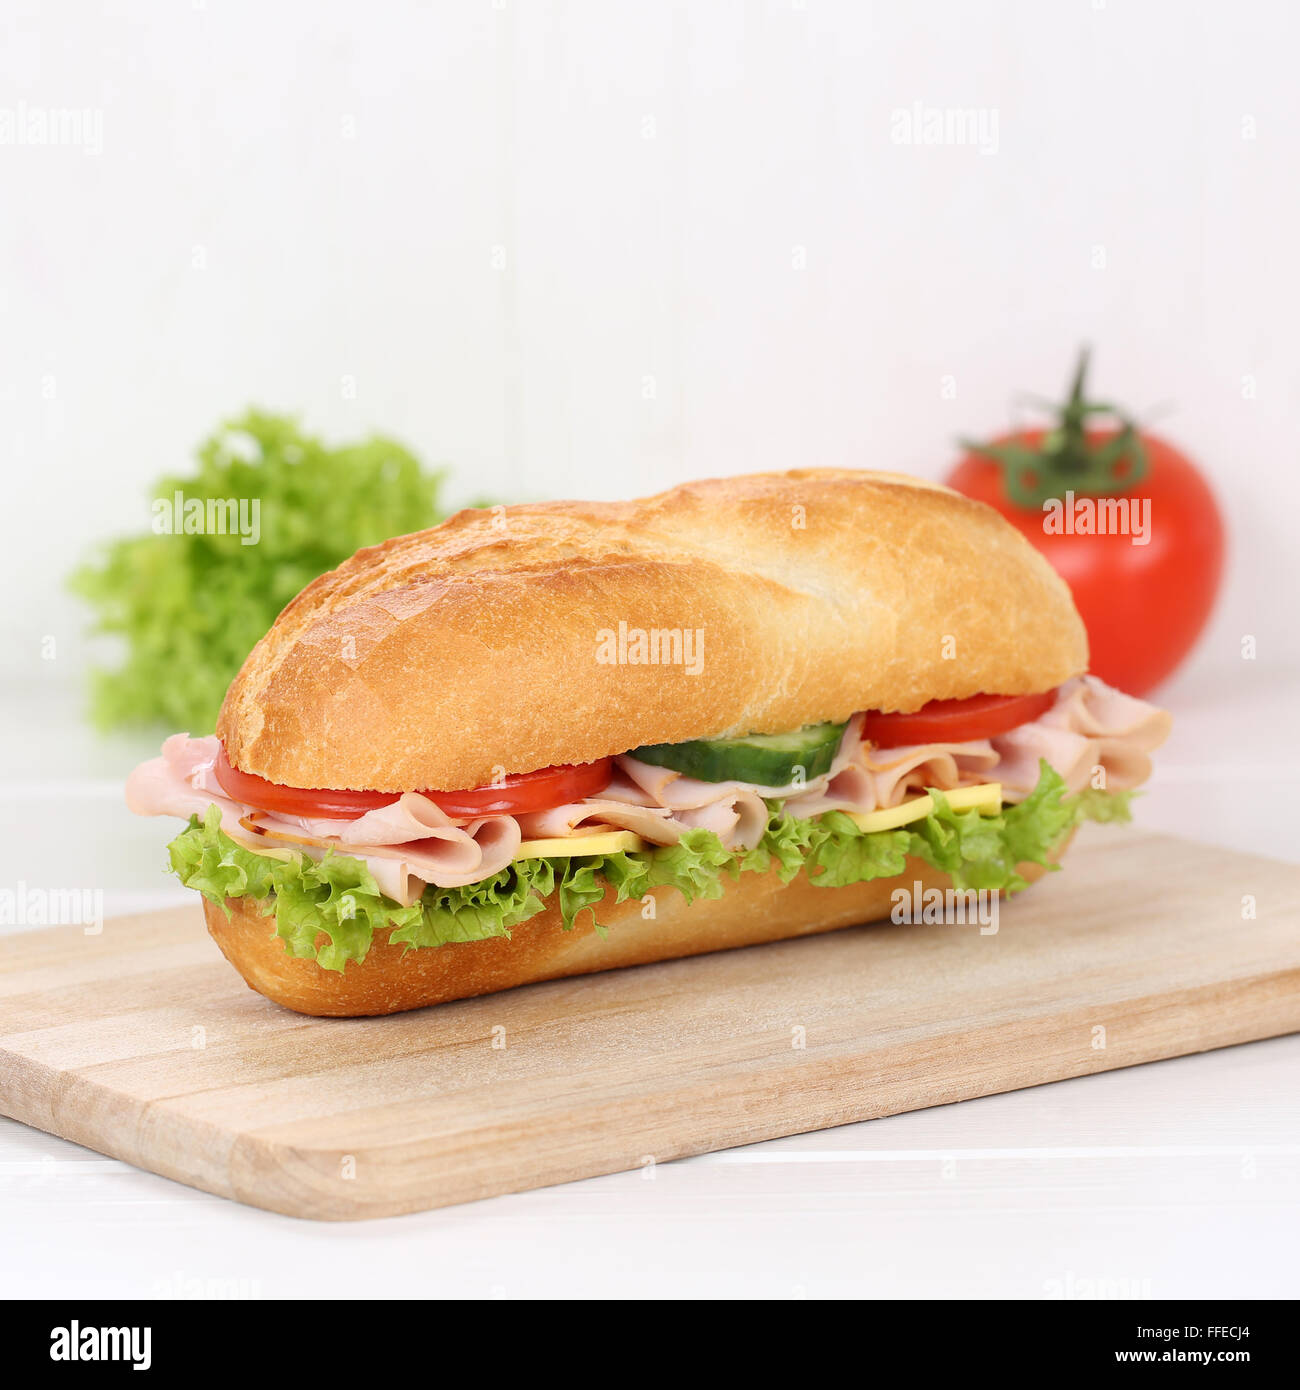 Mangiare sano sub deli sandwich baguette con prosciutto e formaggio, pomodori e lattuga per la prima colazione Foto Stock